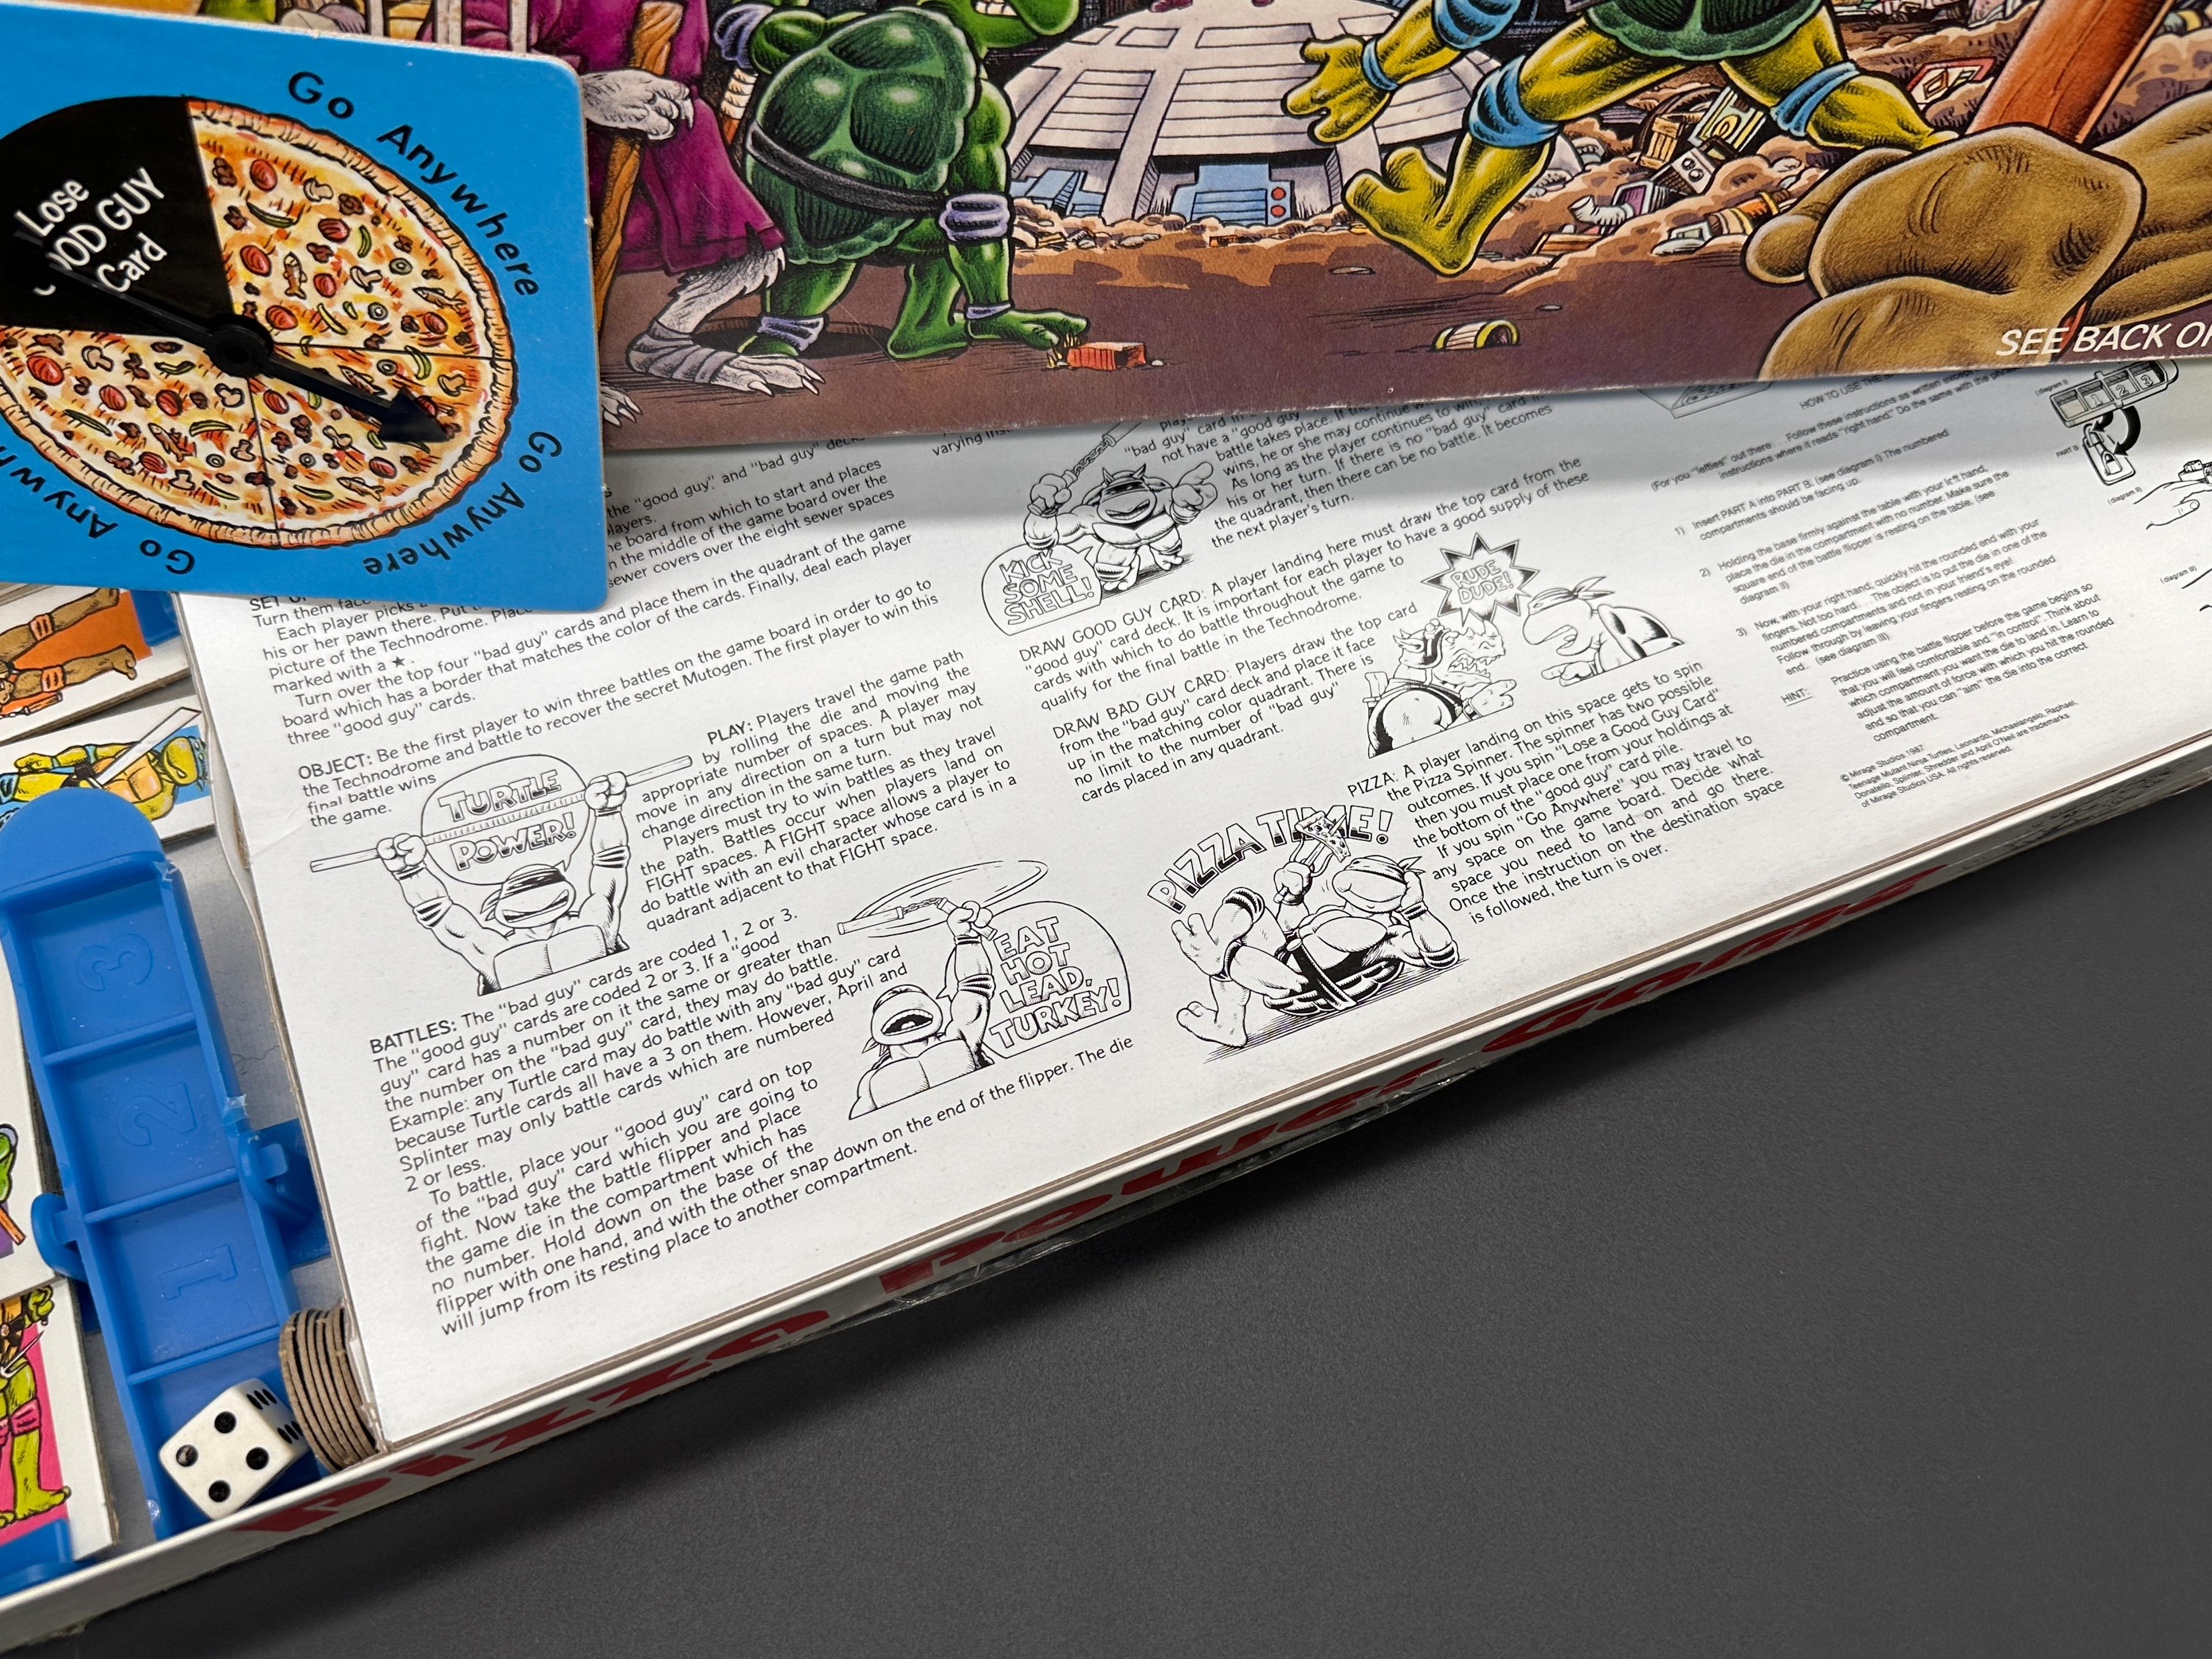 Vintage TMNT/Teenage Mutant Ninja Turtles Pizza Power Game